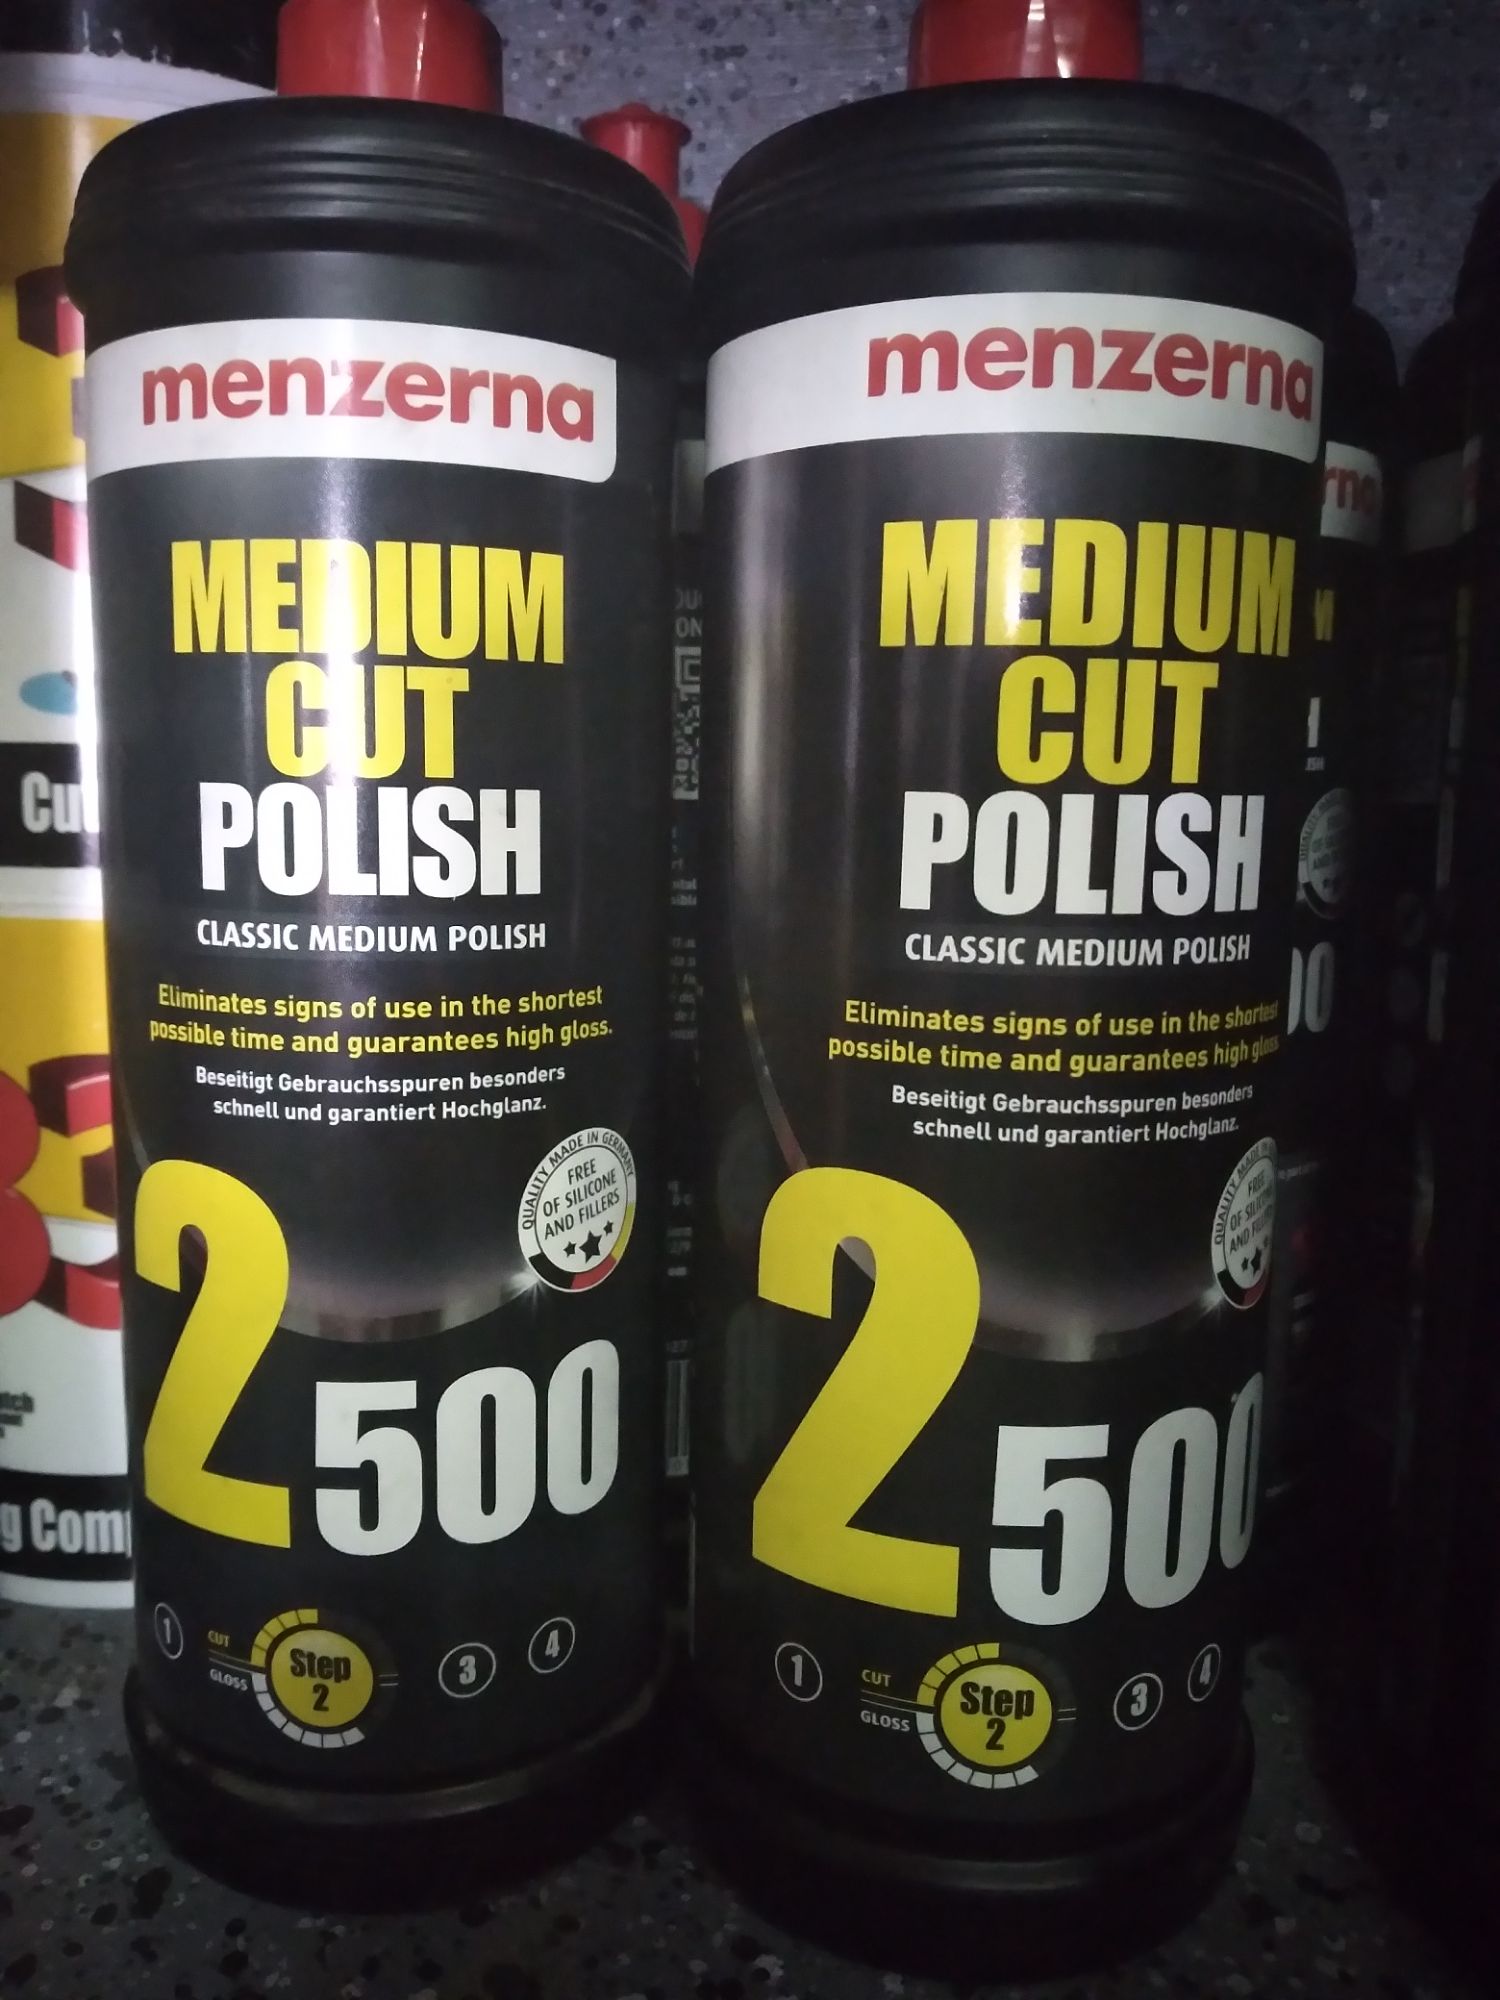 Medium Cut Polish 2500